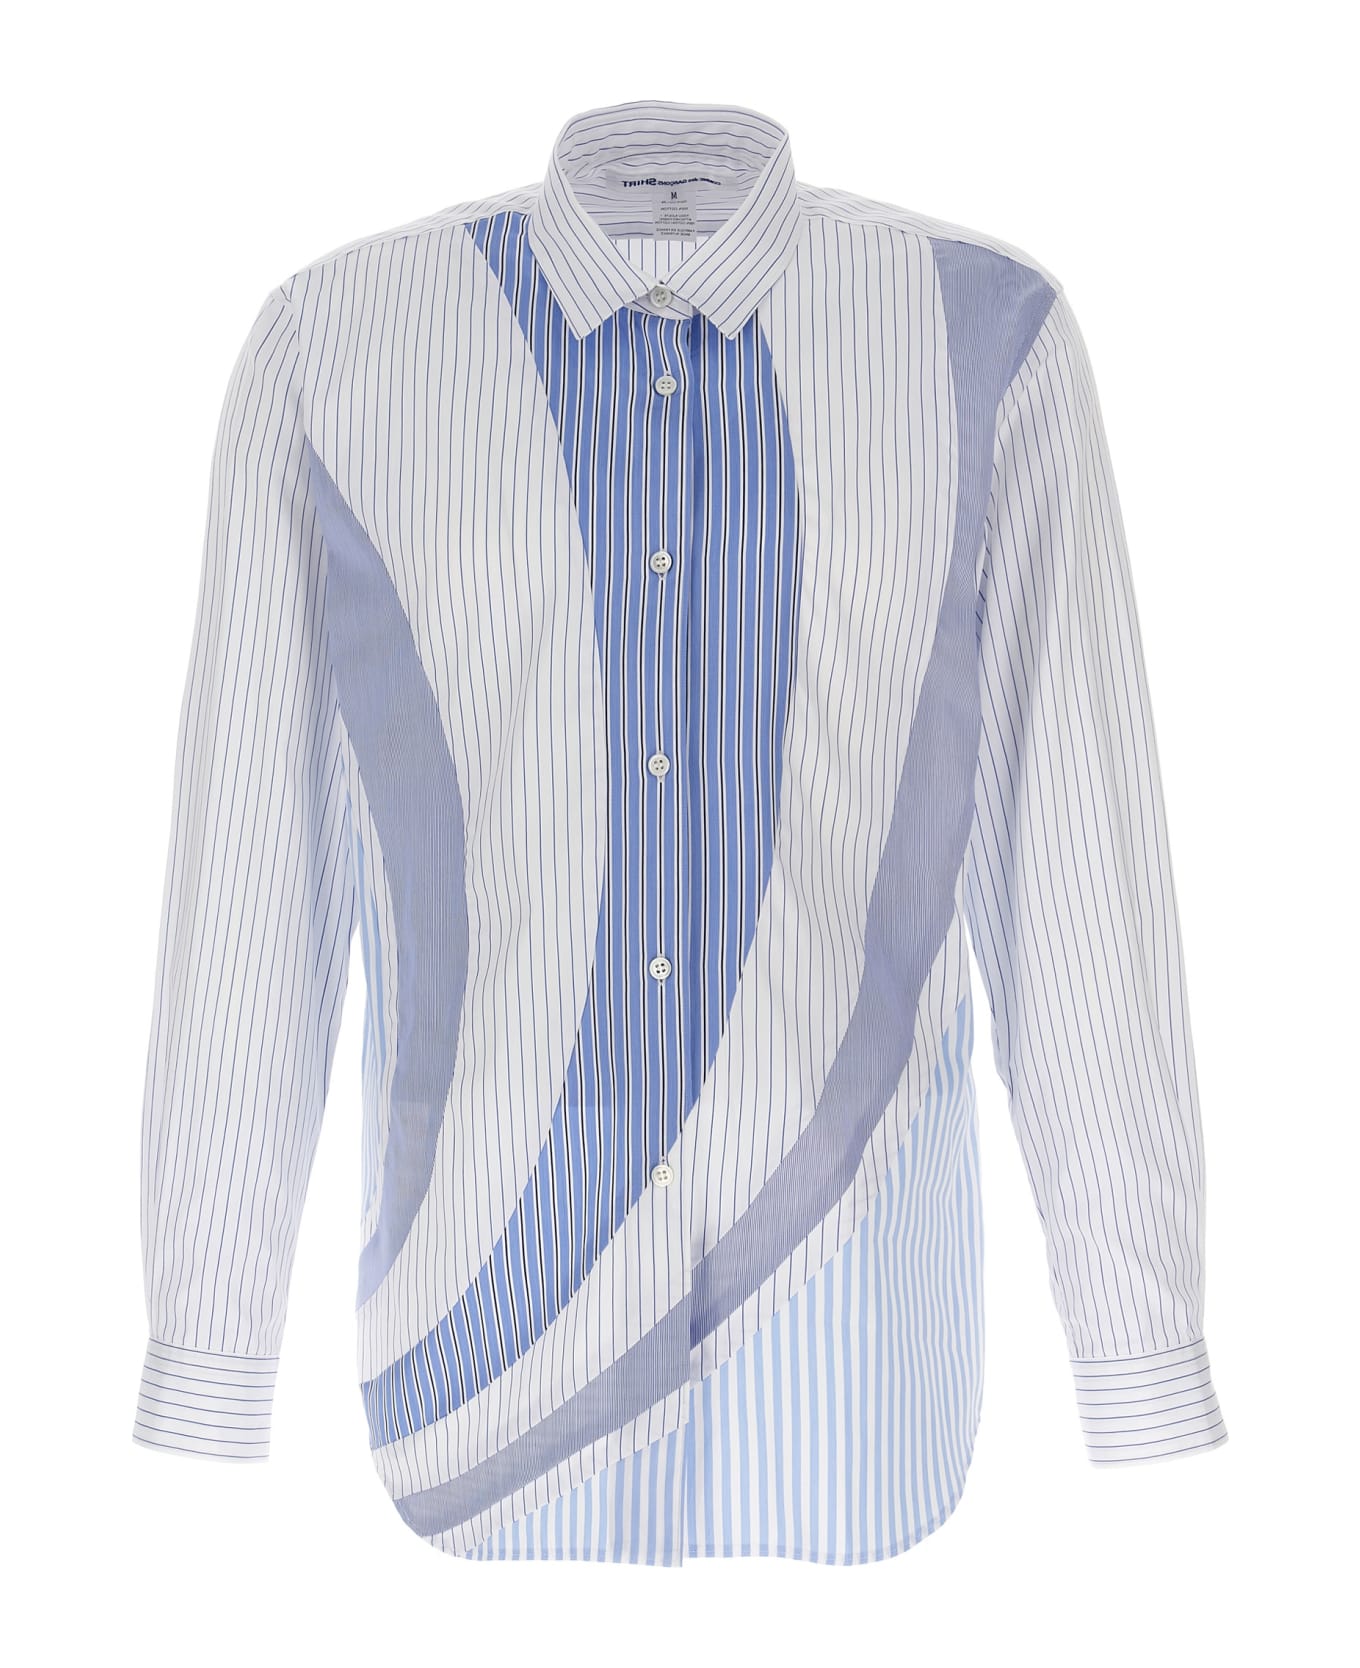 Comme des Garçons Shirt Striped Shirt - Light Blue シャツ